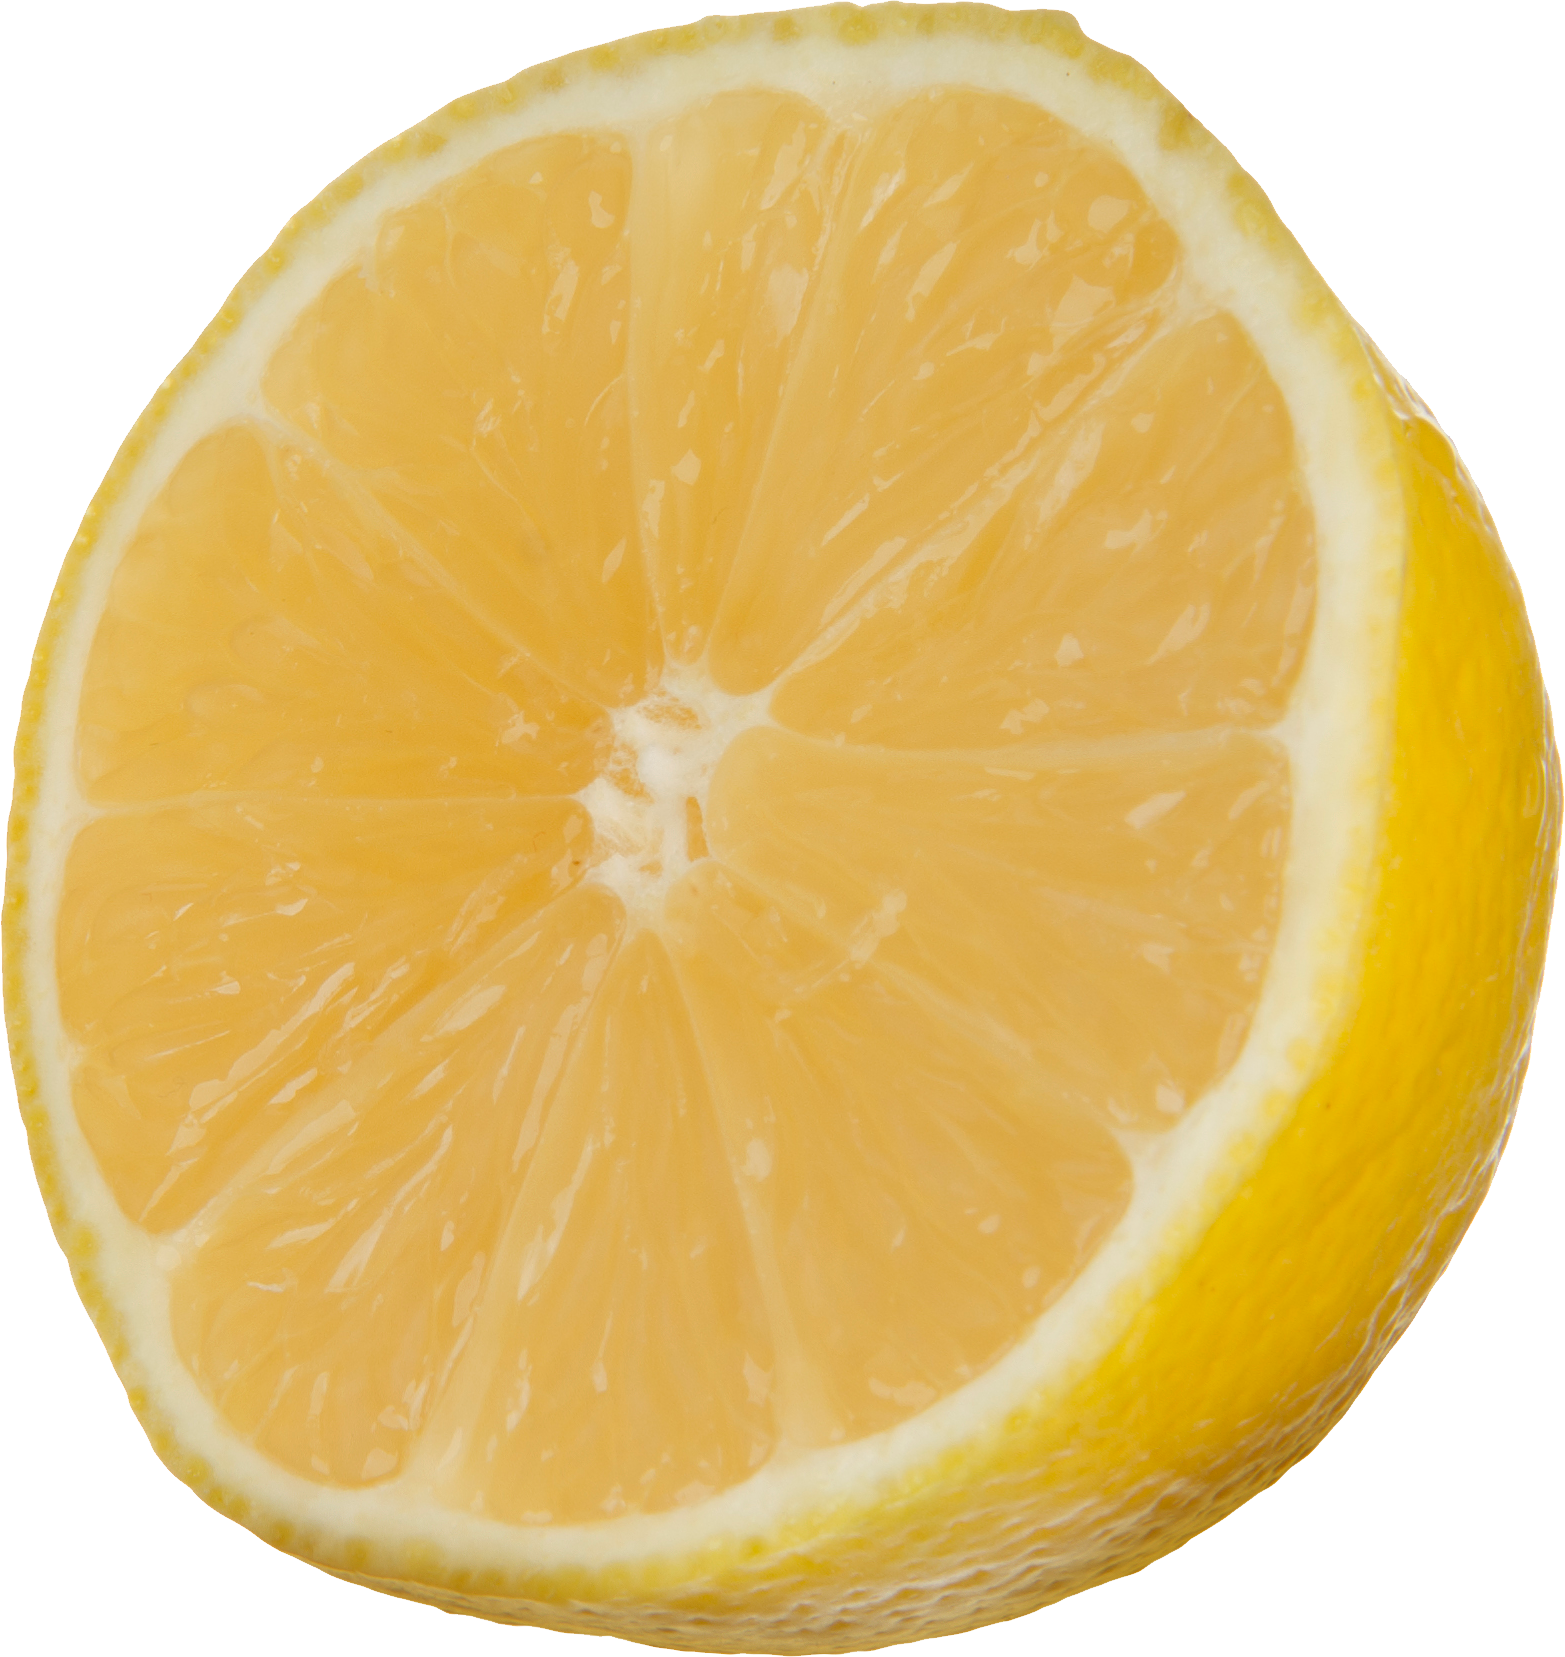 lemons clipart orange